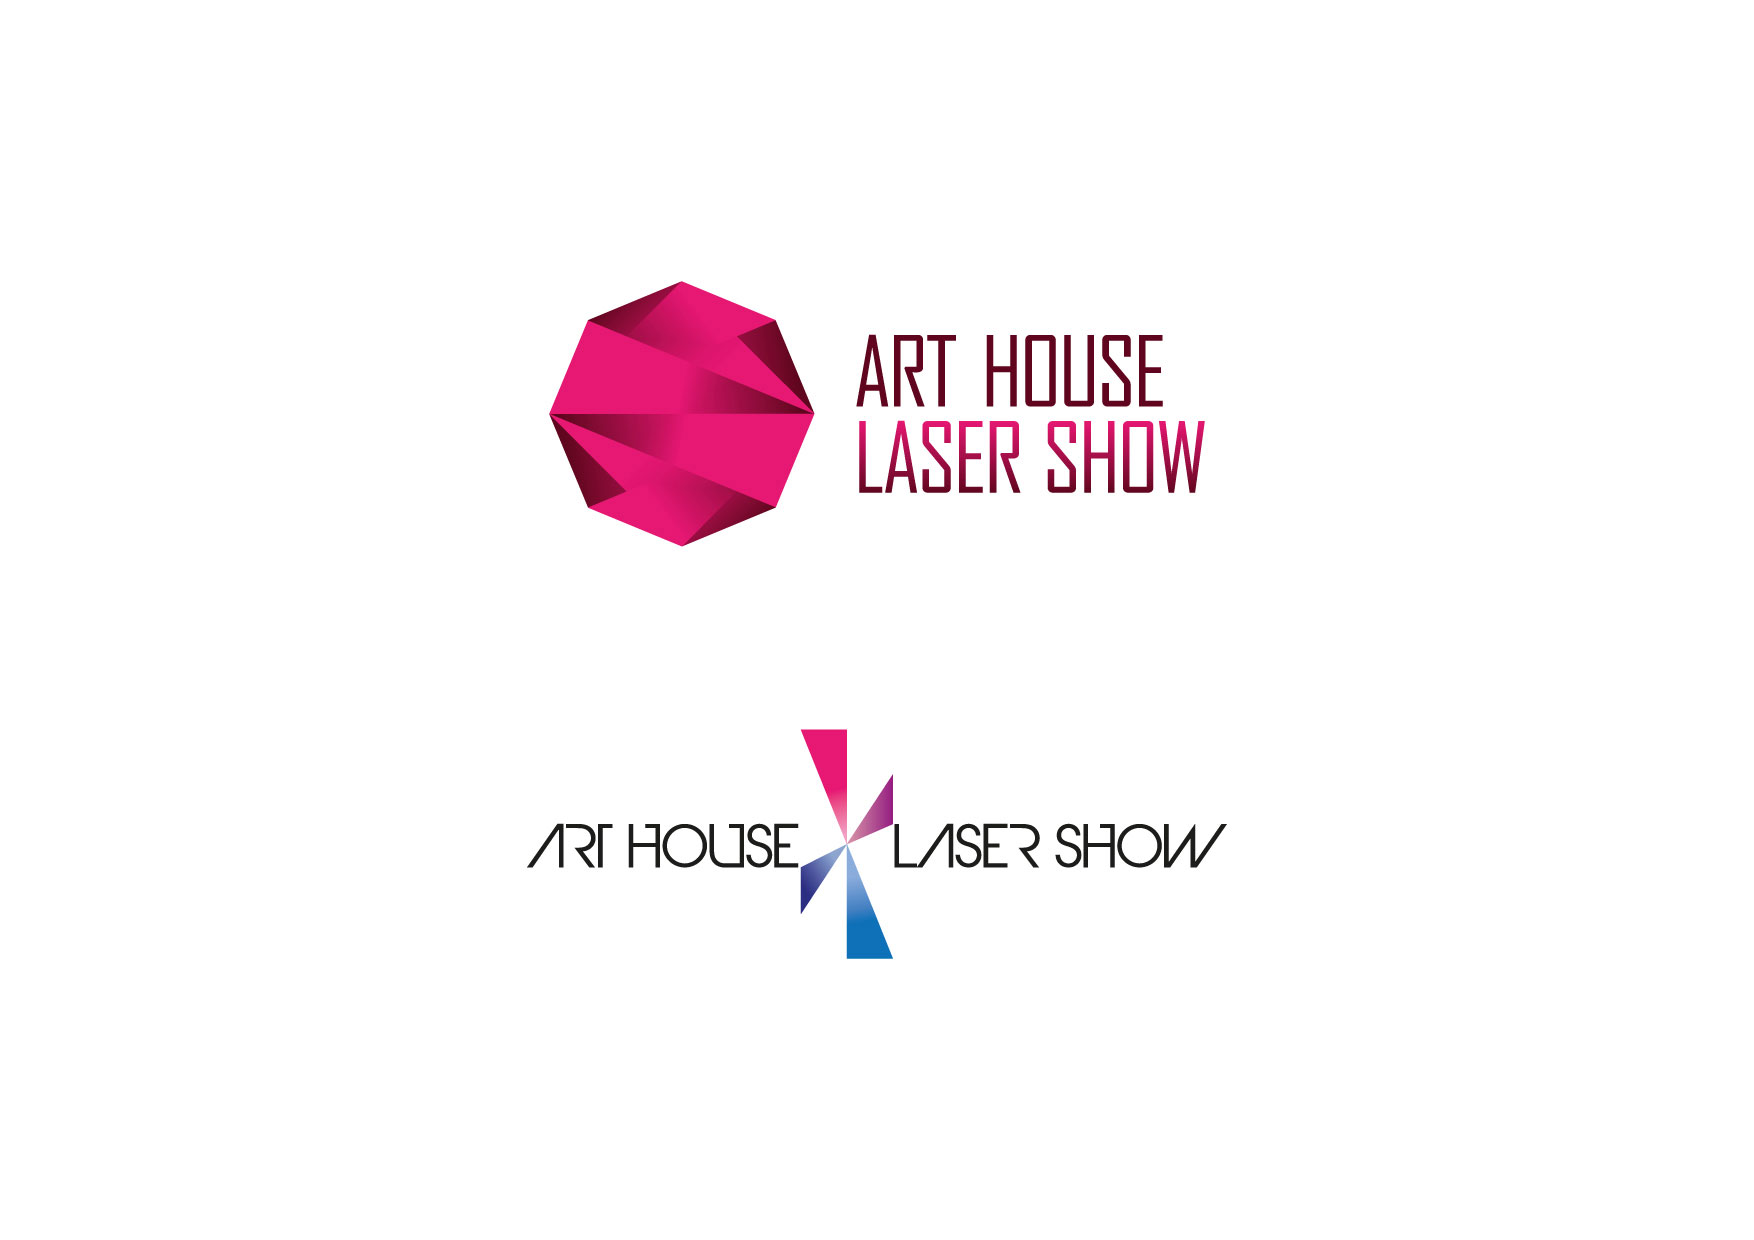 Click to enlarge image eskiz_art_house_laser_show.jpg